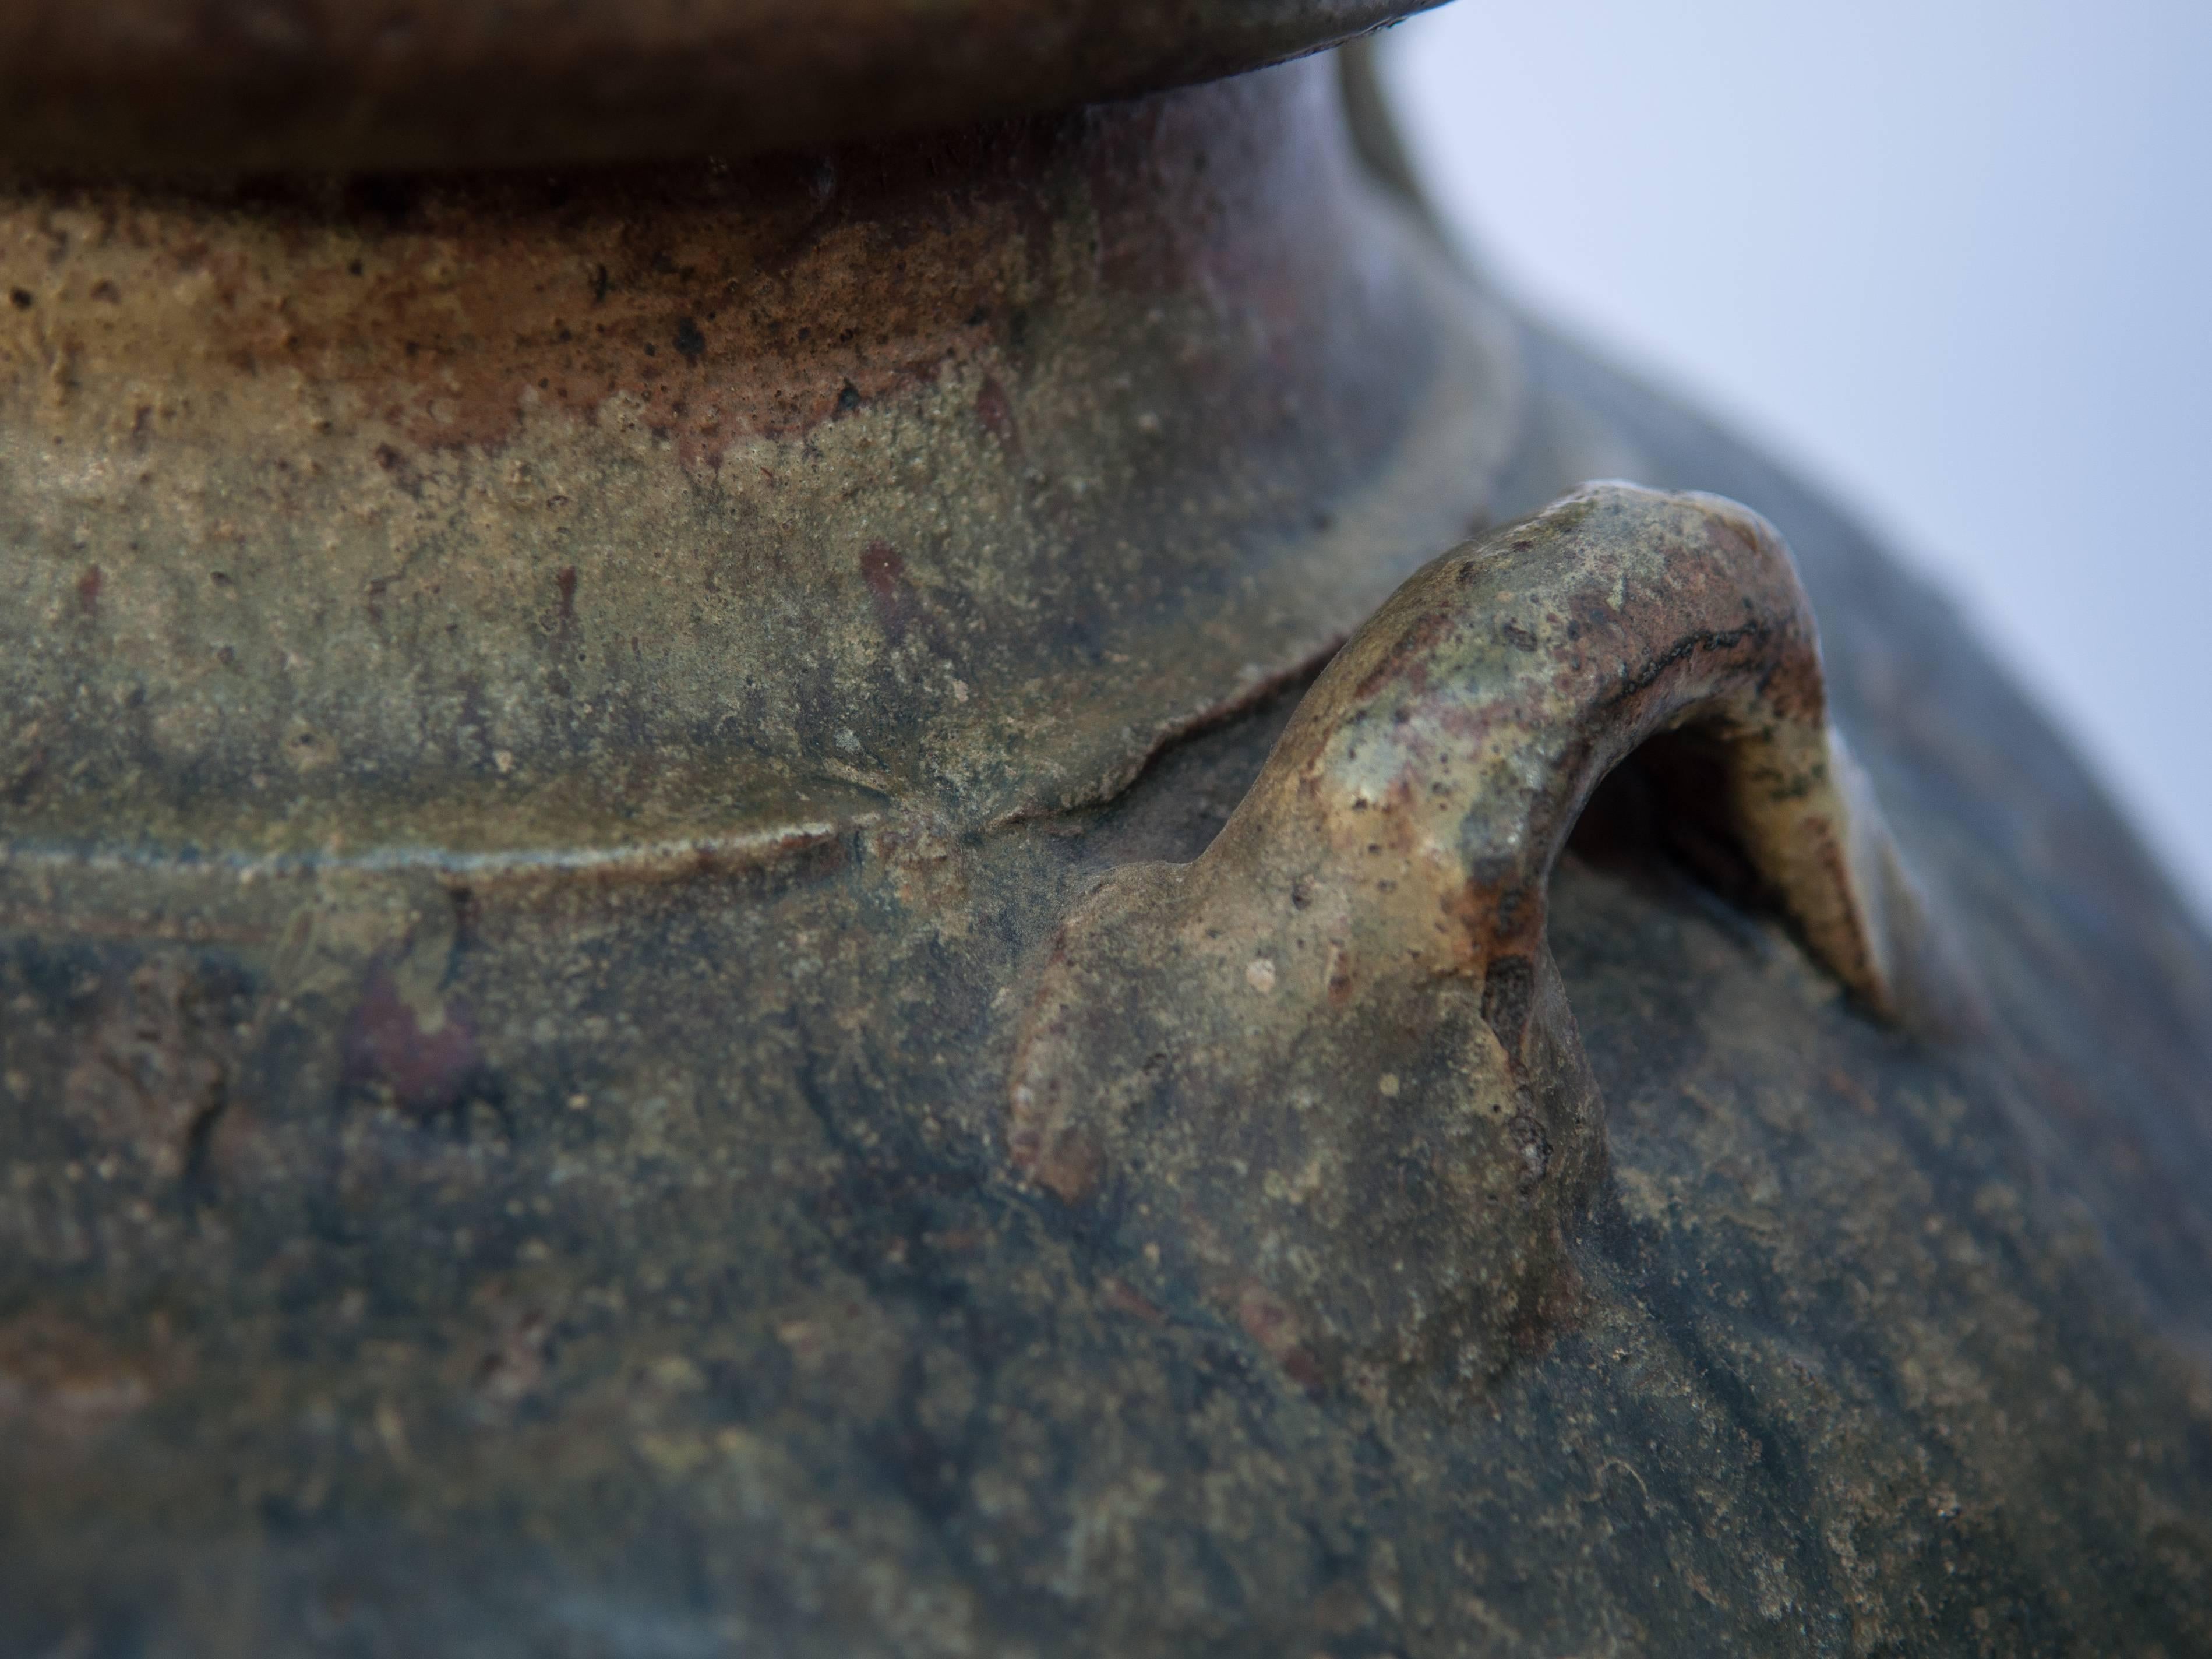 Martaban Ware Stoneware Storage Jar, Running Glaze, Ming Dynasty, Found in Laos 9